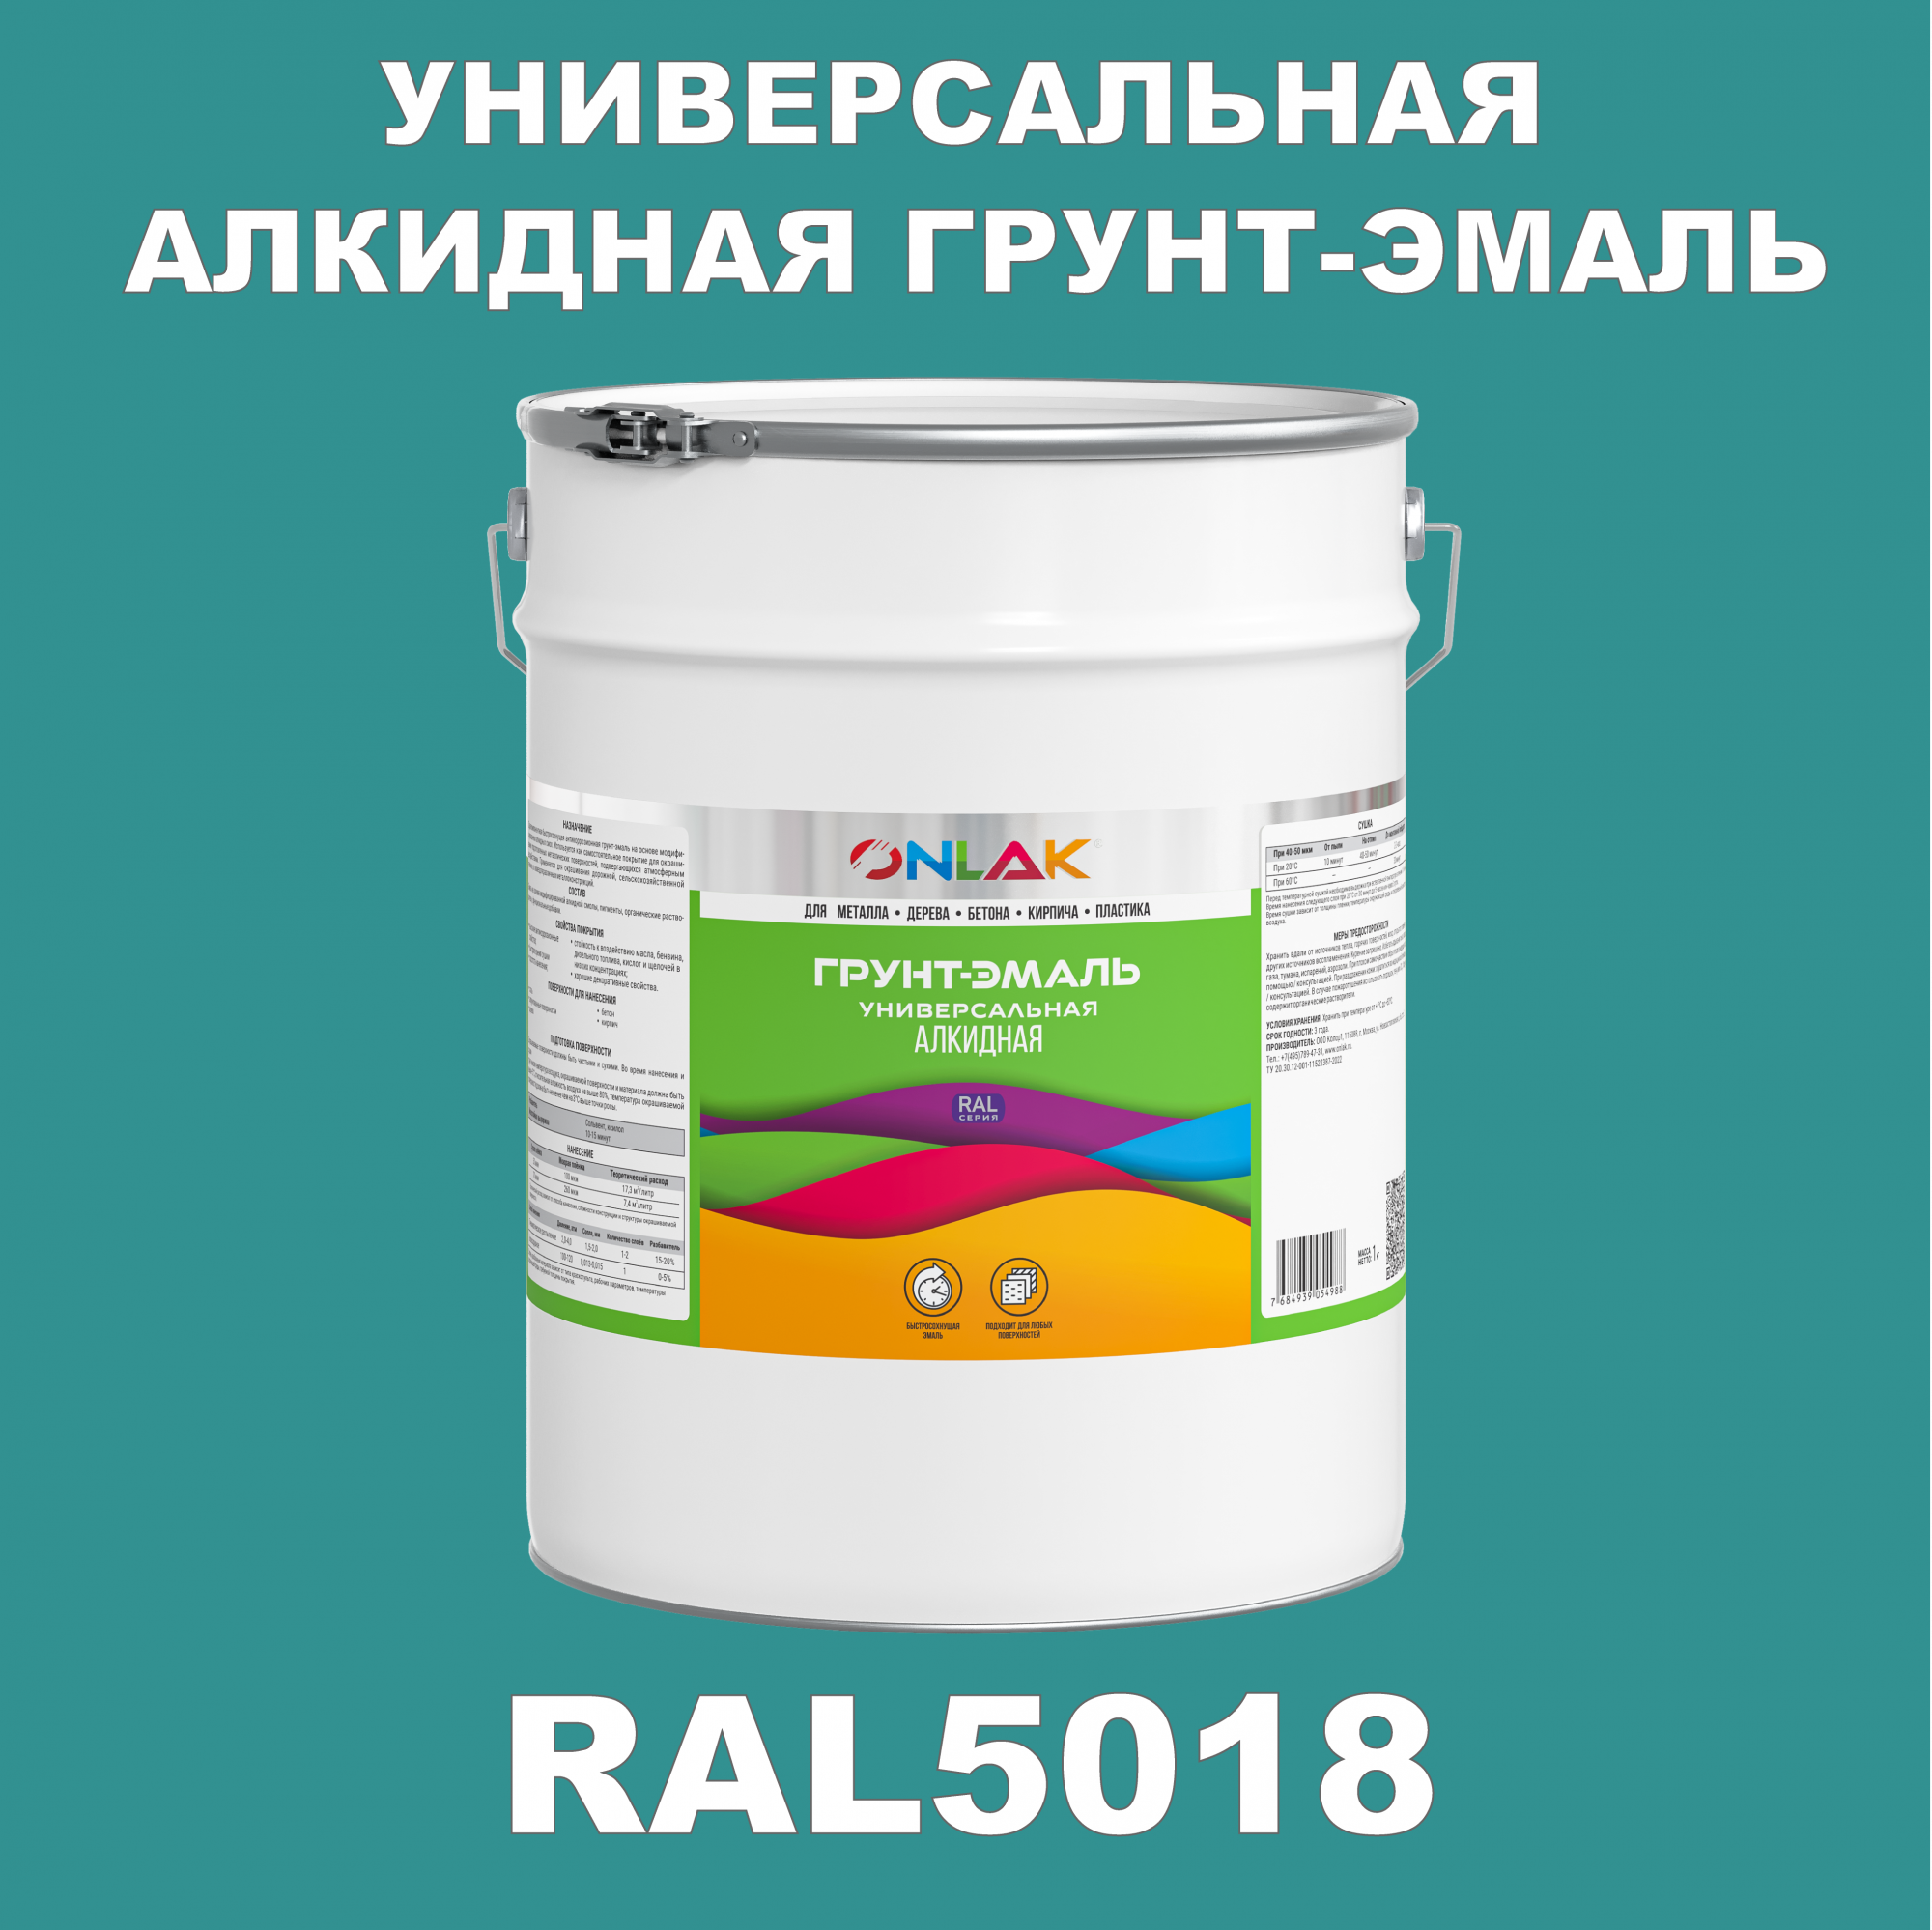 Грунт-эмаль ONLAK 1К RAL5018 антикоррозионная алкидная по металлу по ржавчине 20 кг грунт эмаль yollo по ржавчине алкидная серая 0 9 кг